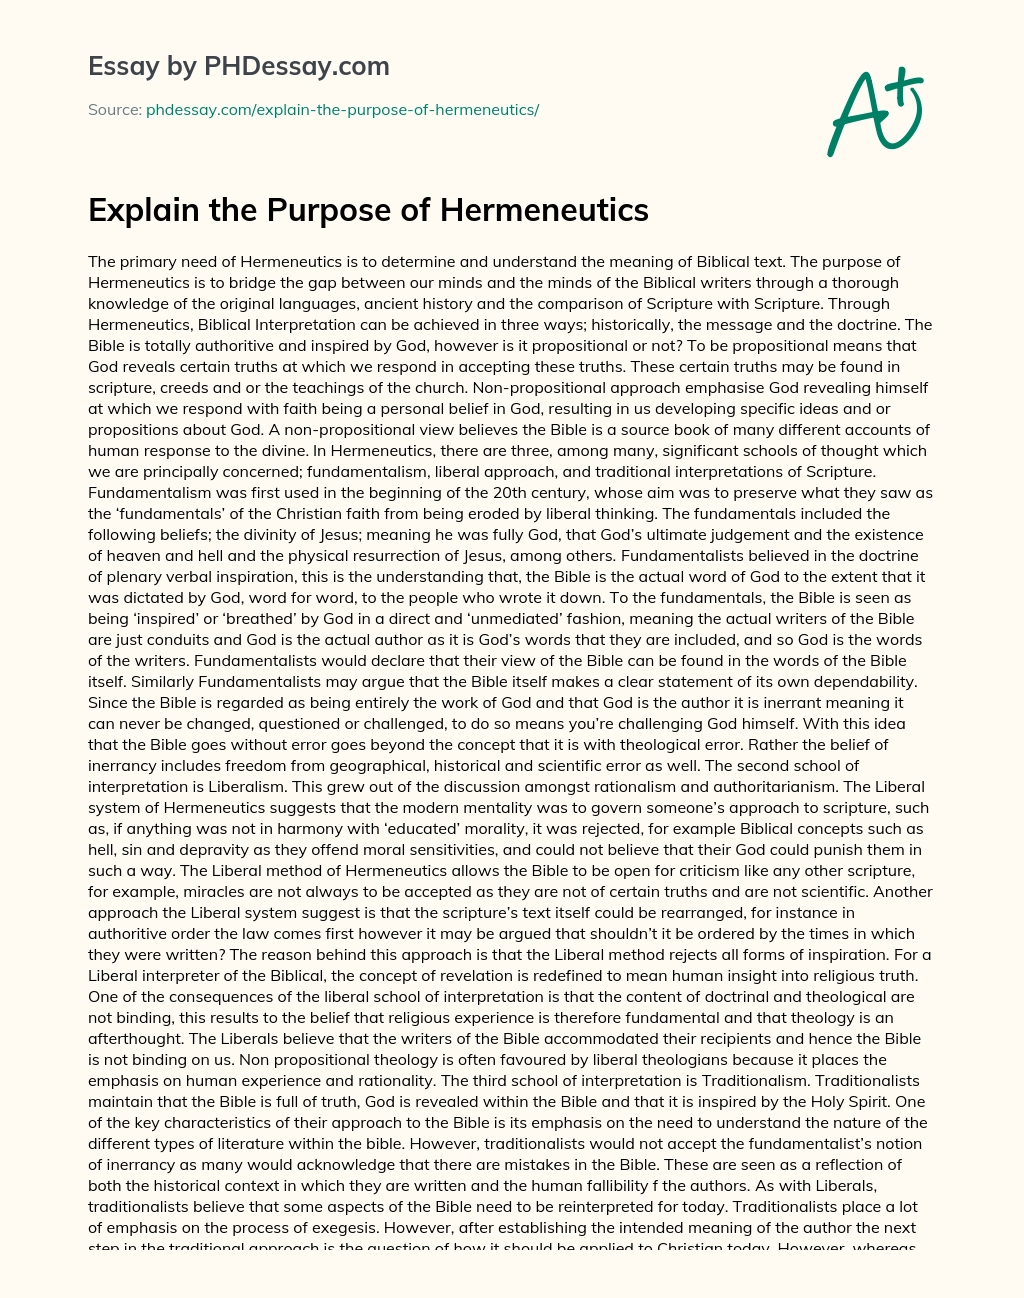 Explain the Purpose of Hermeneutics essay